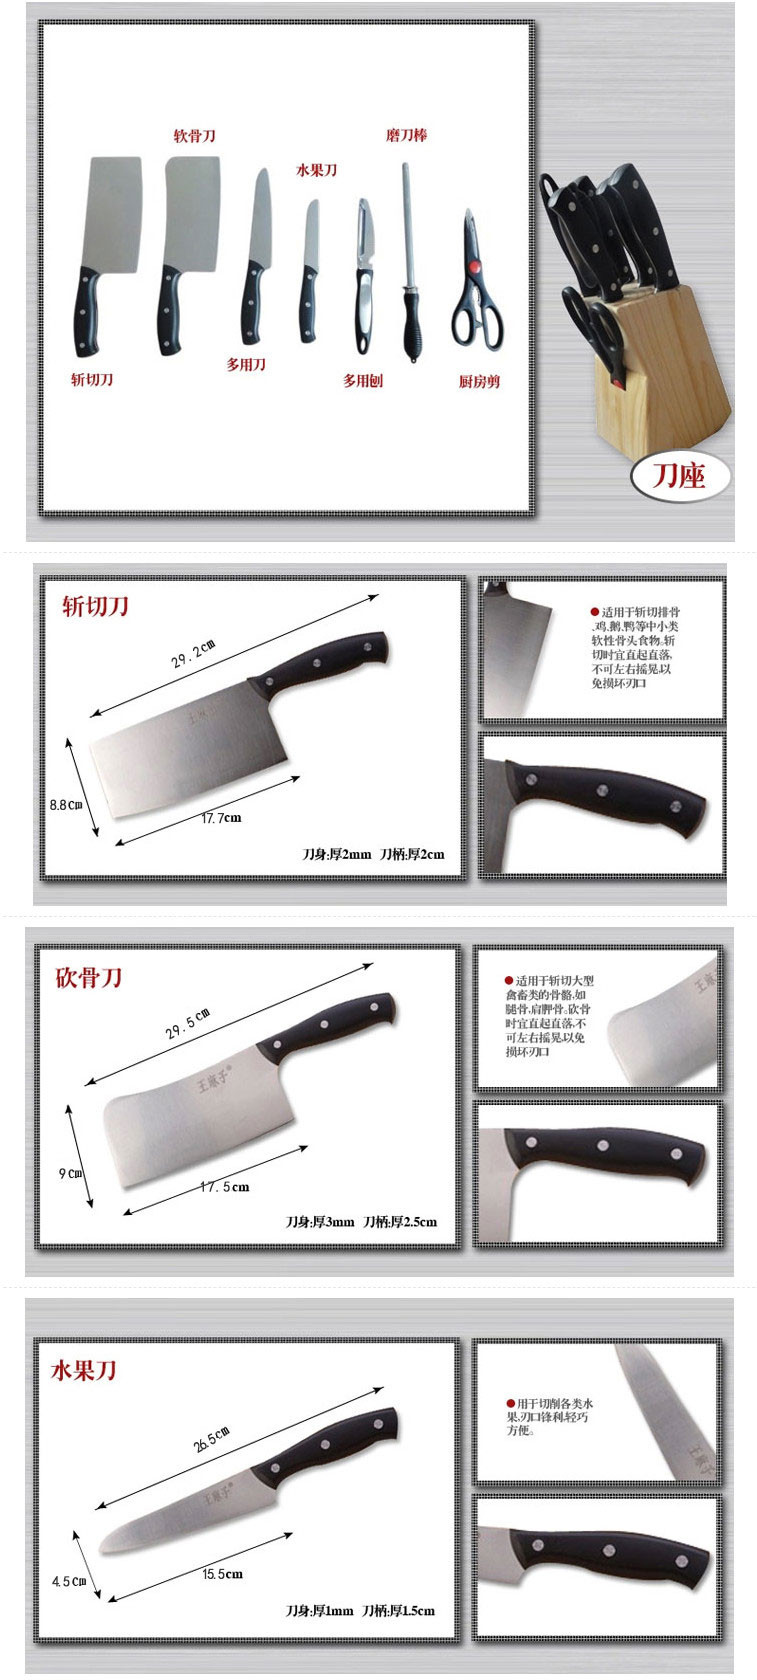 王麻子 DD60 塑柄 8件套刀